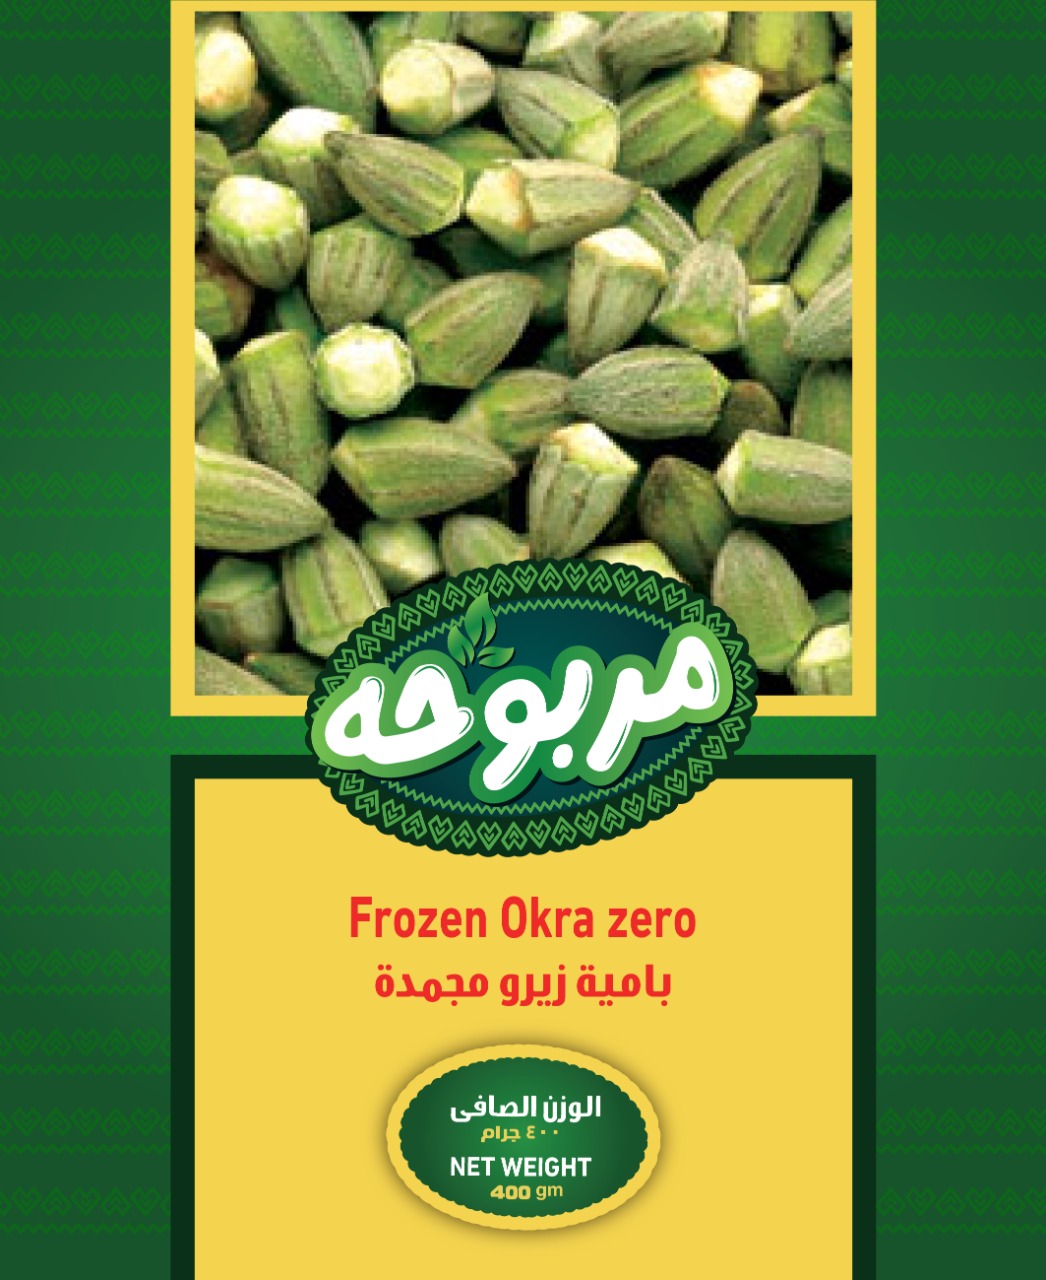 Frozen Okra Zero